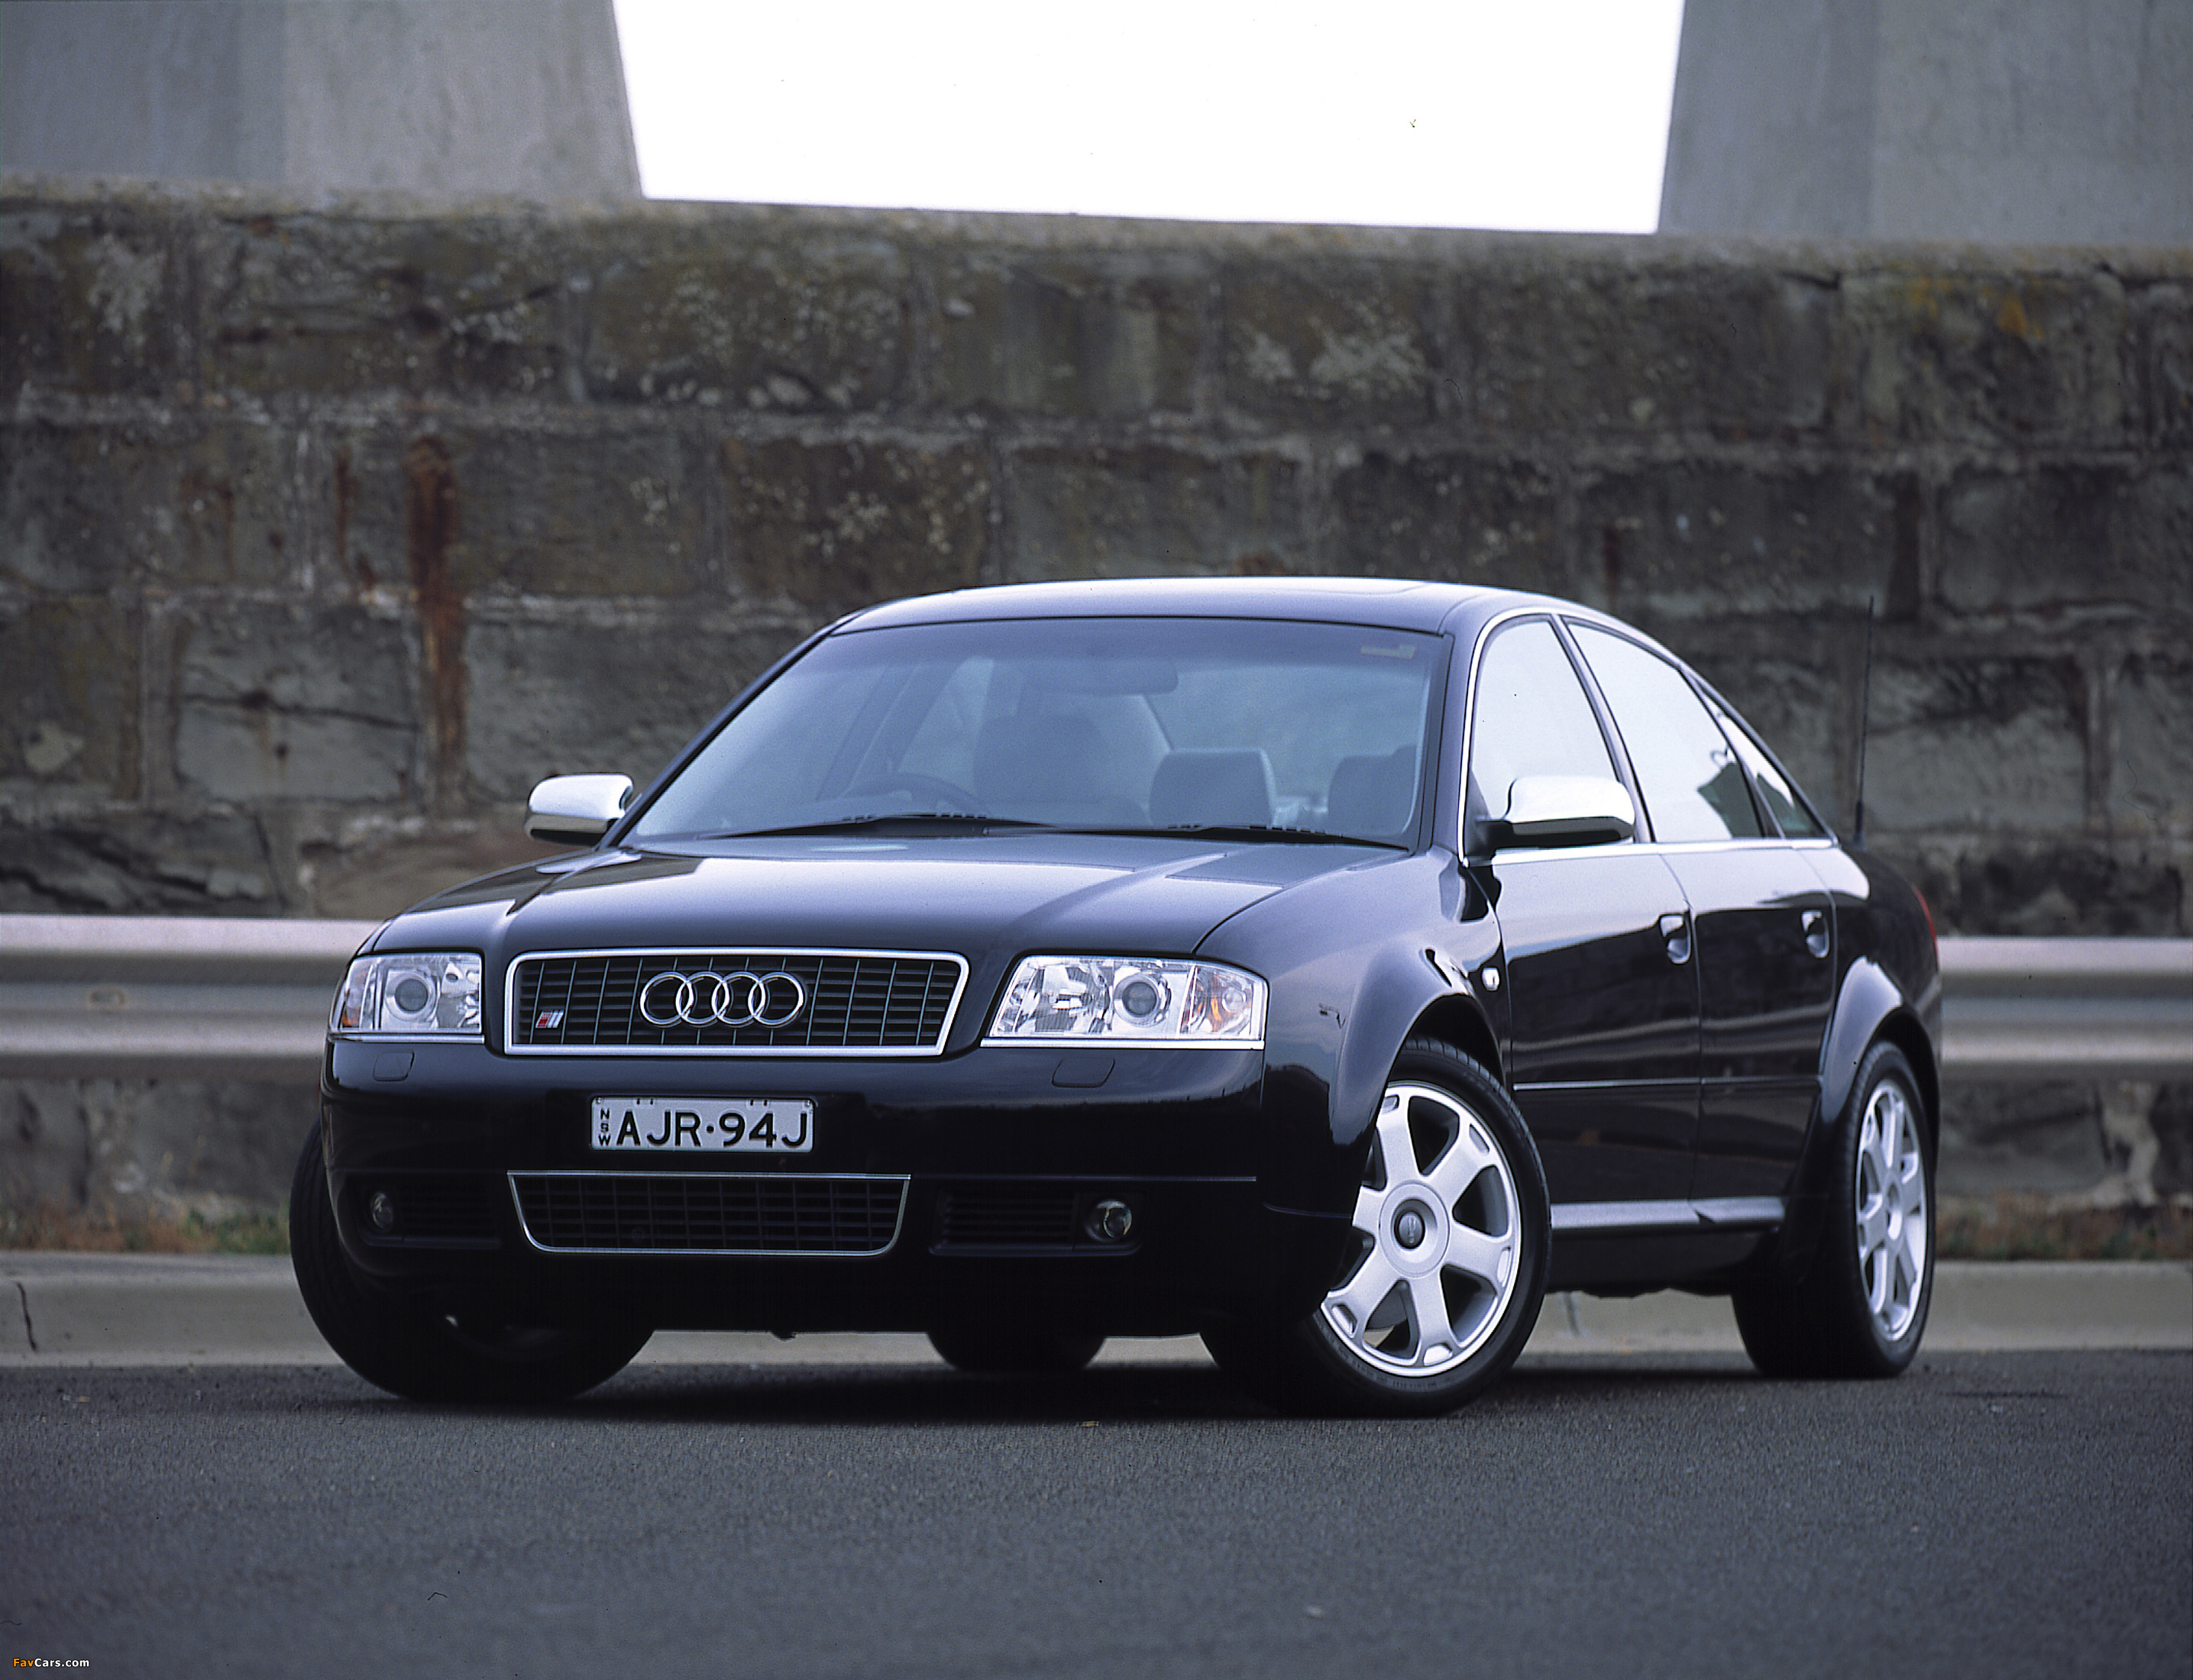 Ауди 4 2001 год. Audi a6 c5 2000. Ауди s6 2001. Audi s6 c5. Audi s6 2001.